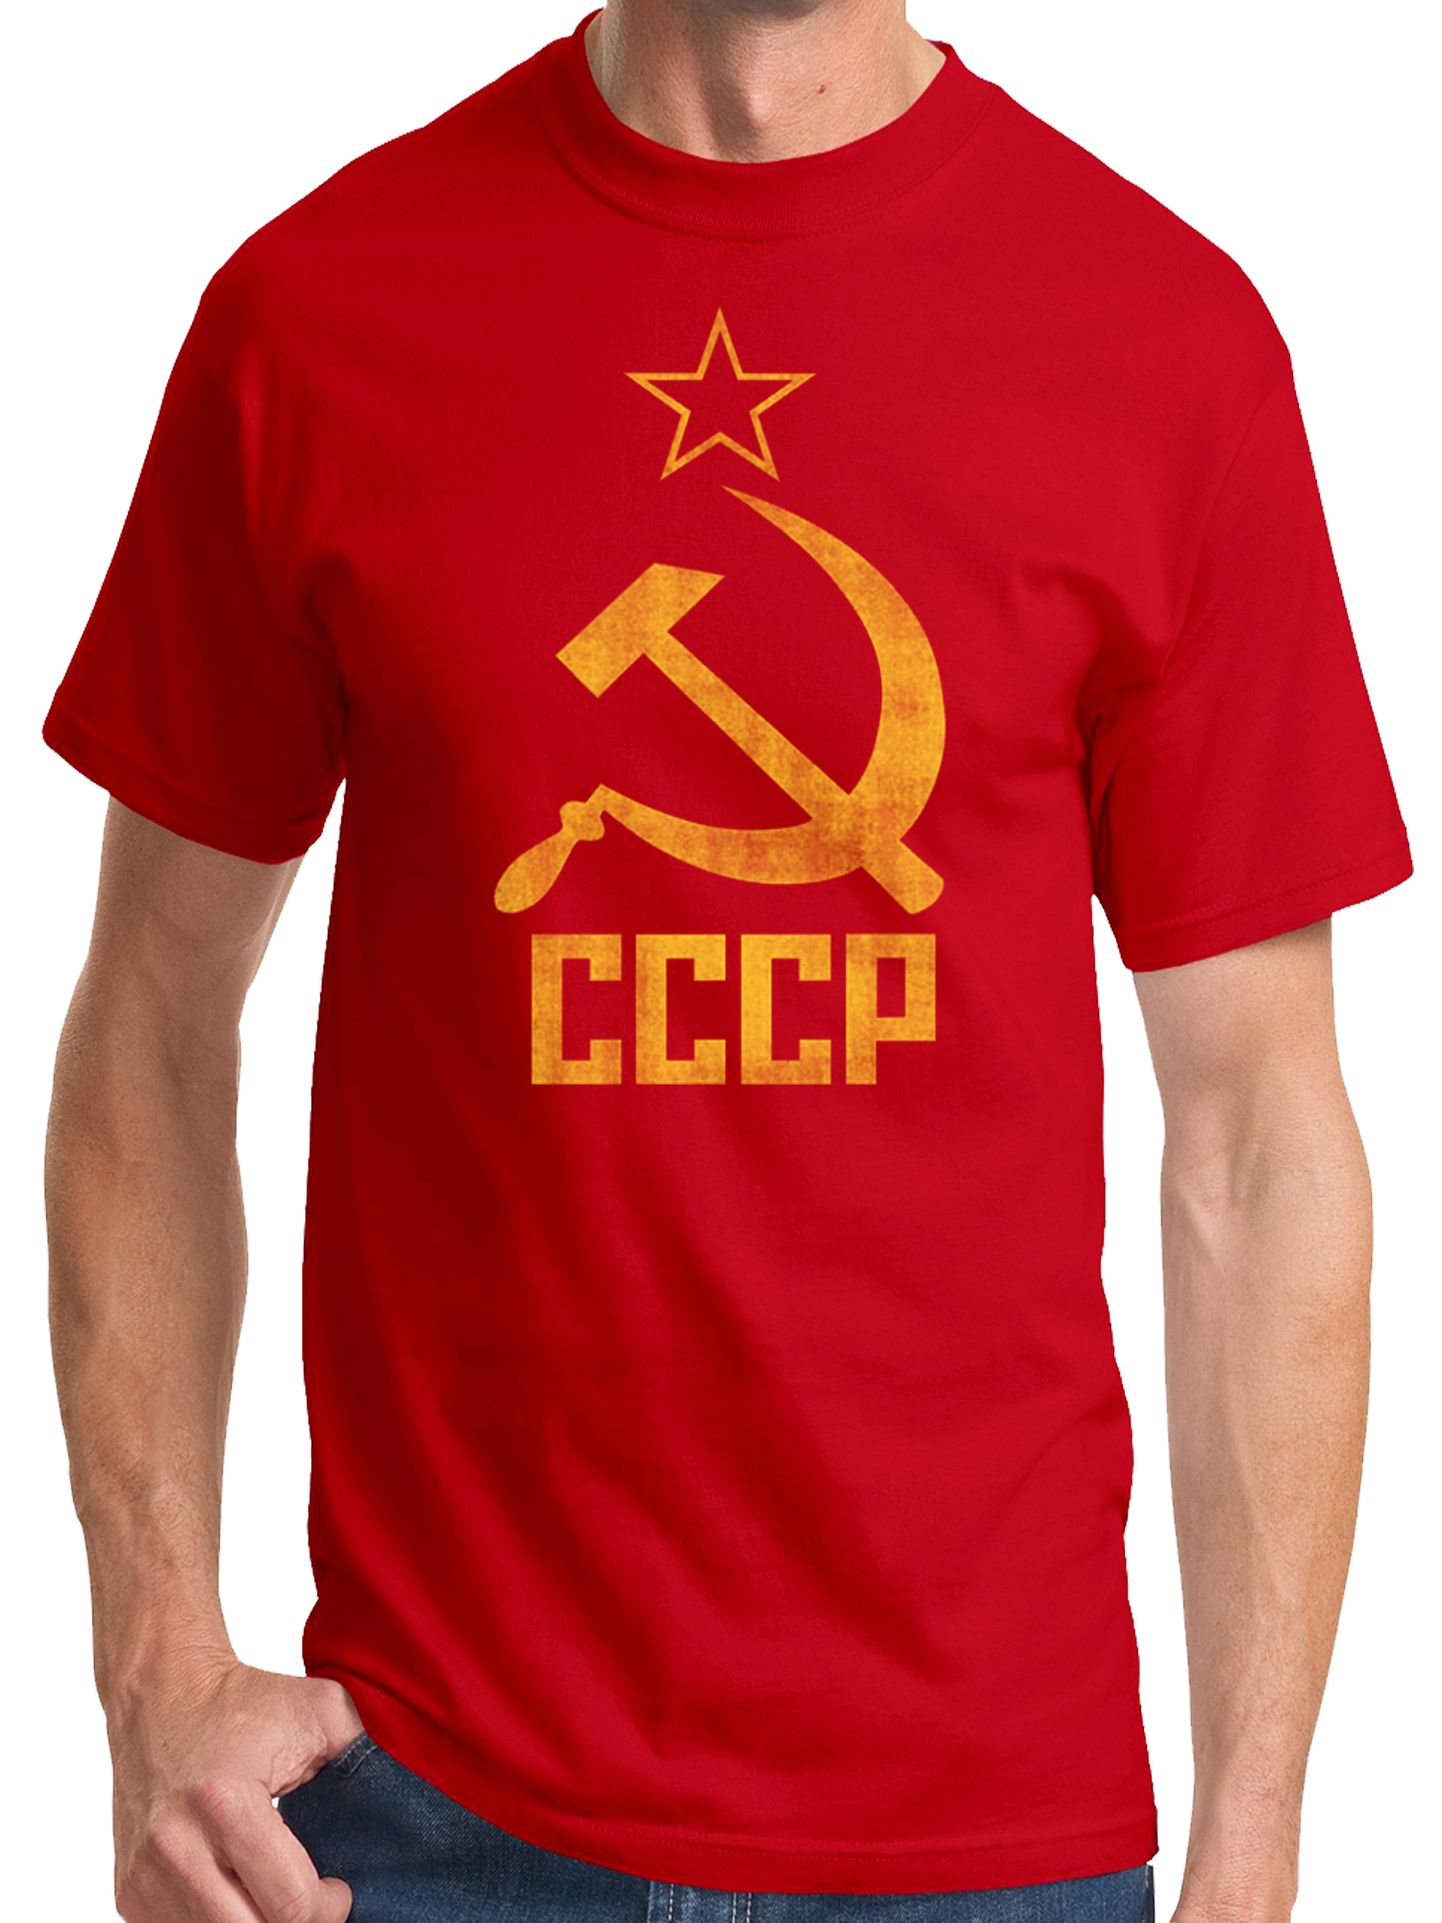 Nõukogude Liidu sümboolikaga t-särk Walmarti veebipoes.